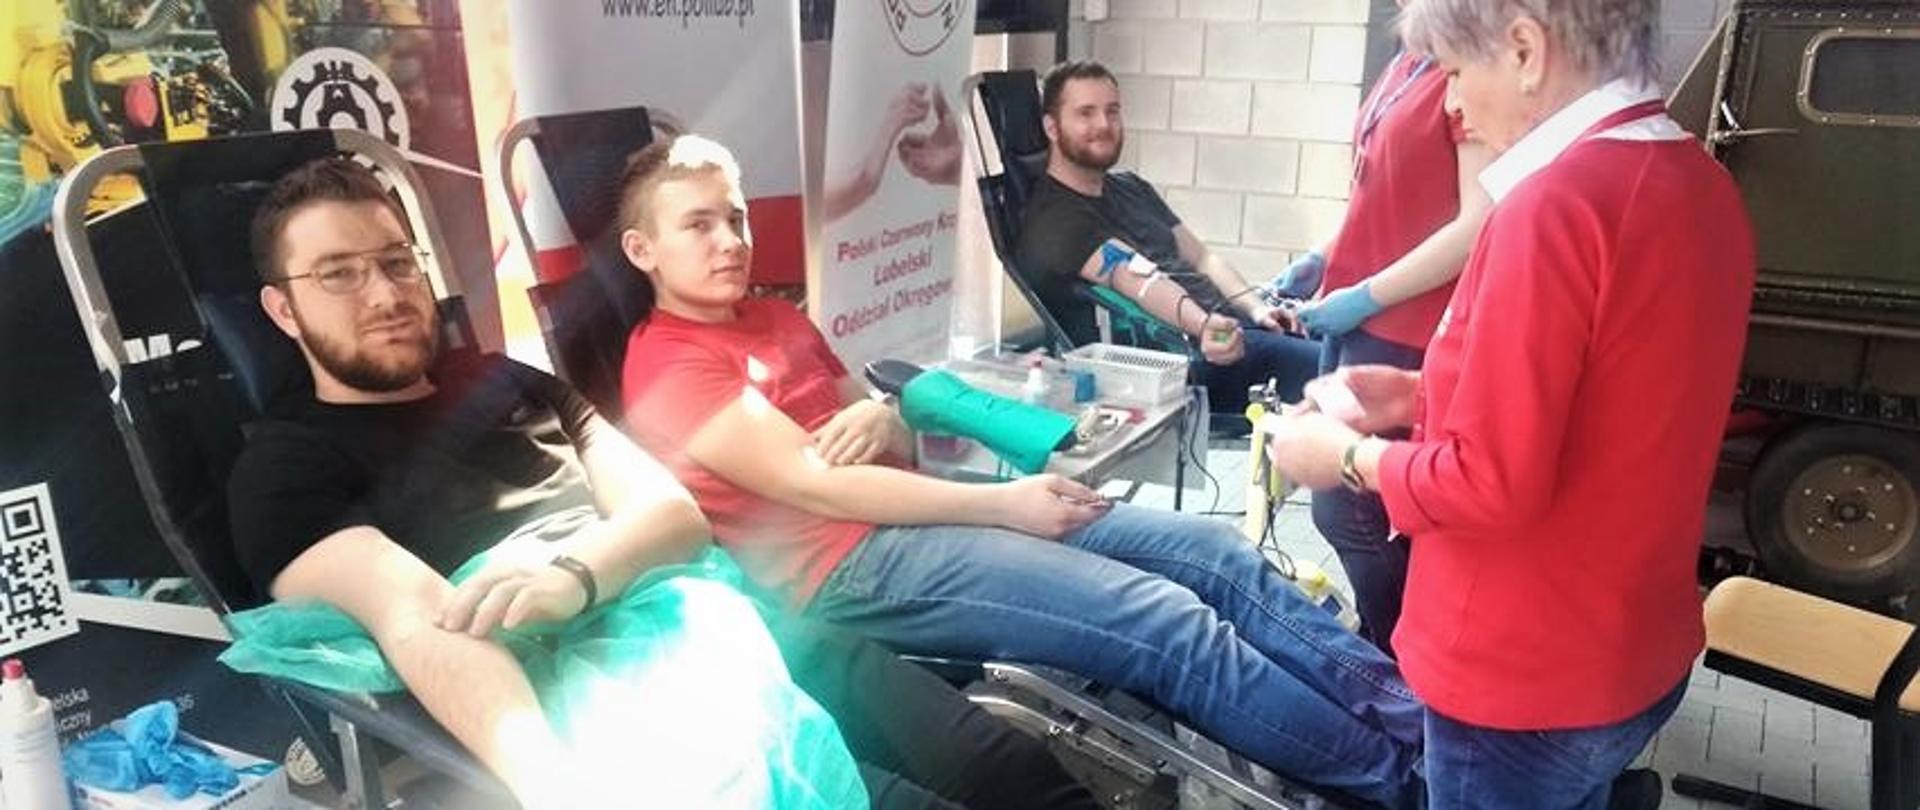 Dwudniowa akcja pobierania krwi na Politechnice Lubelskiej